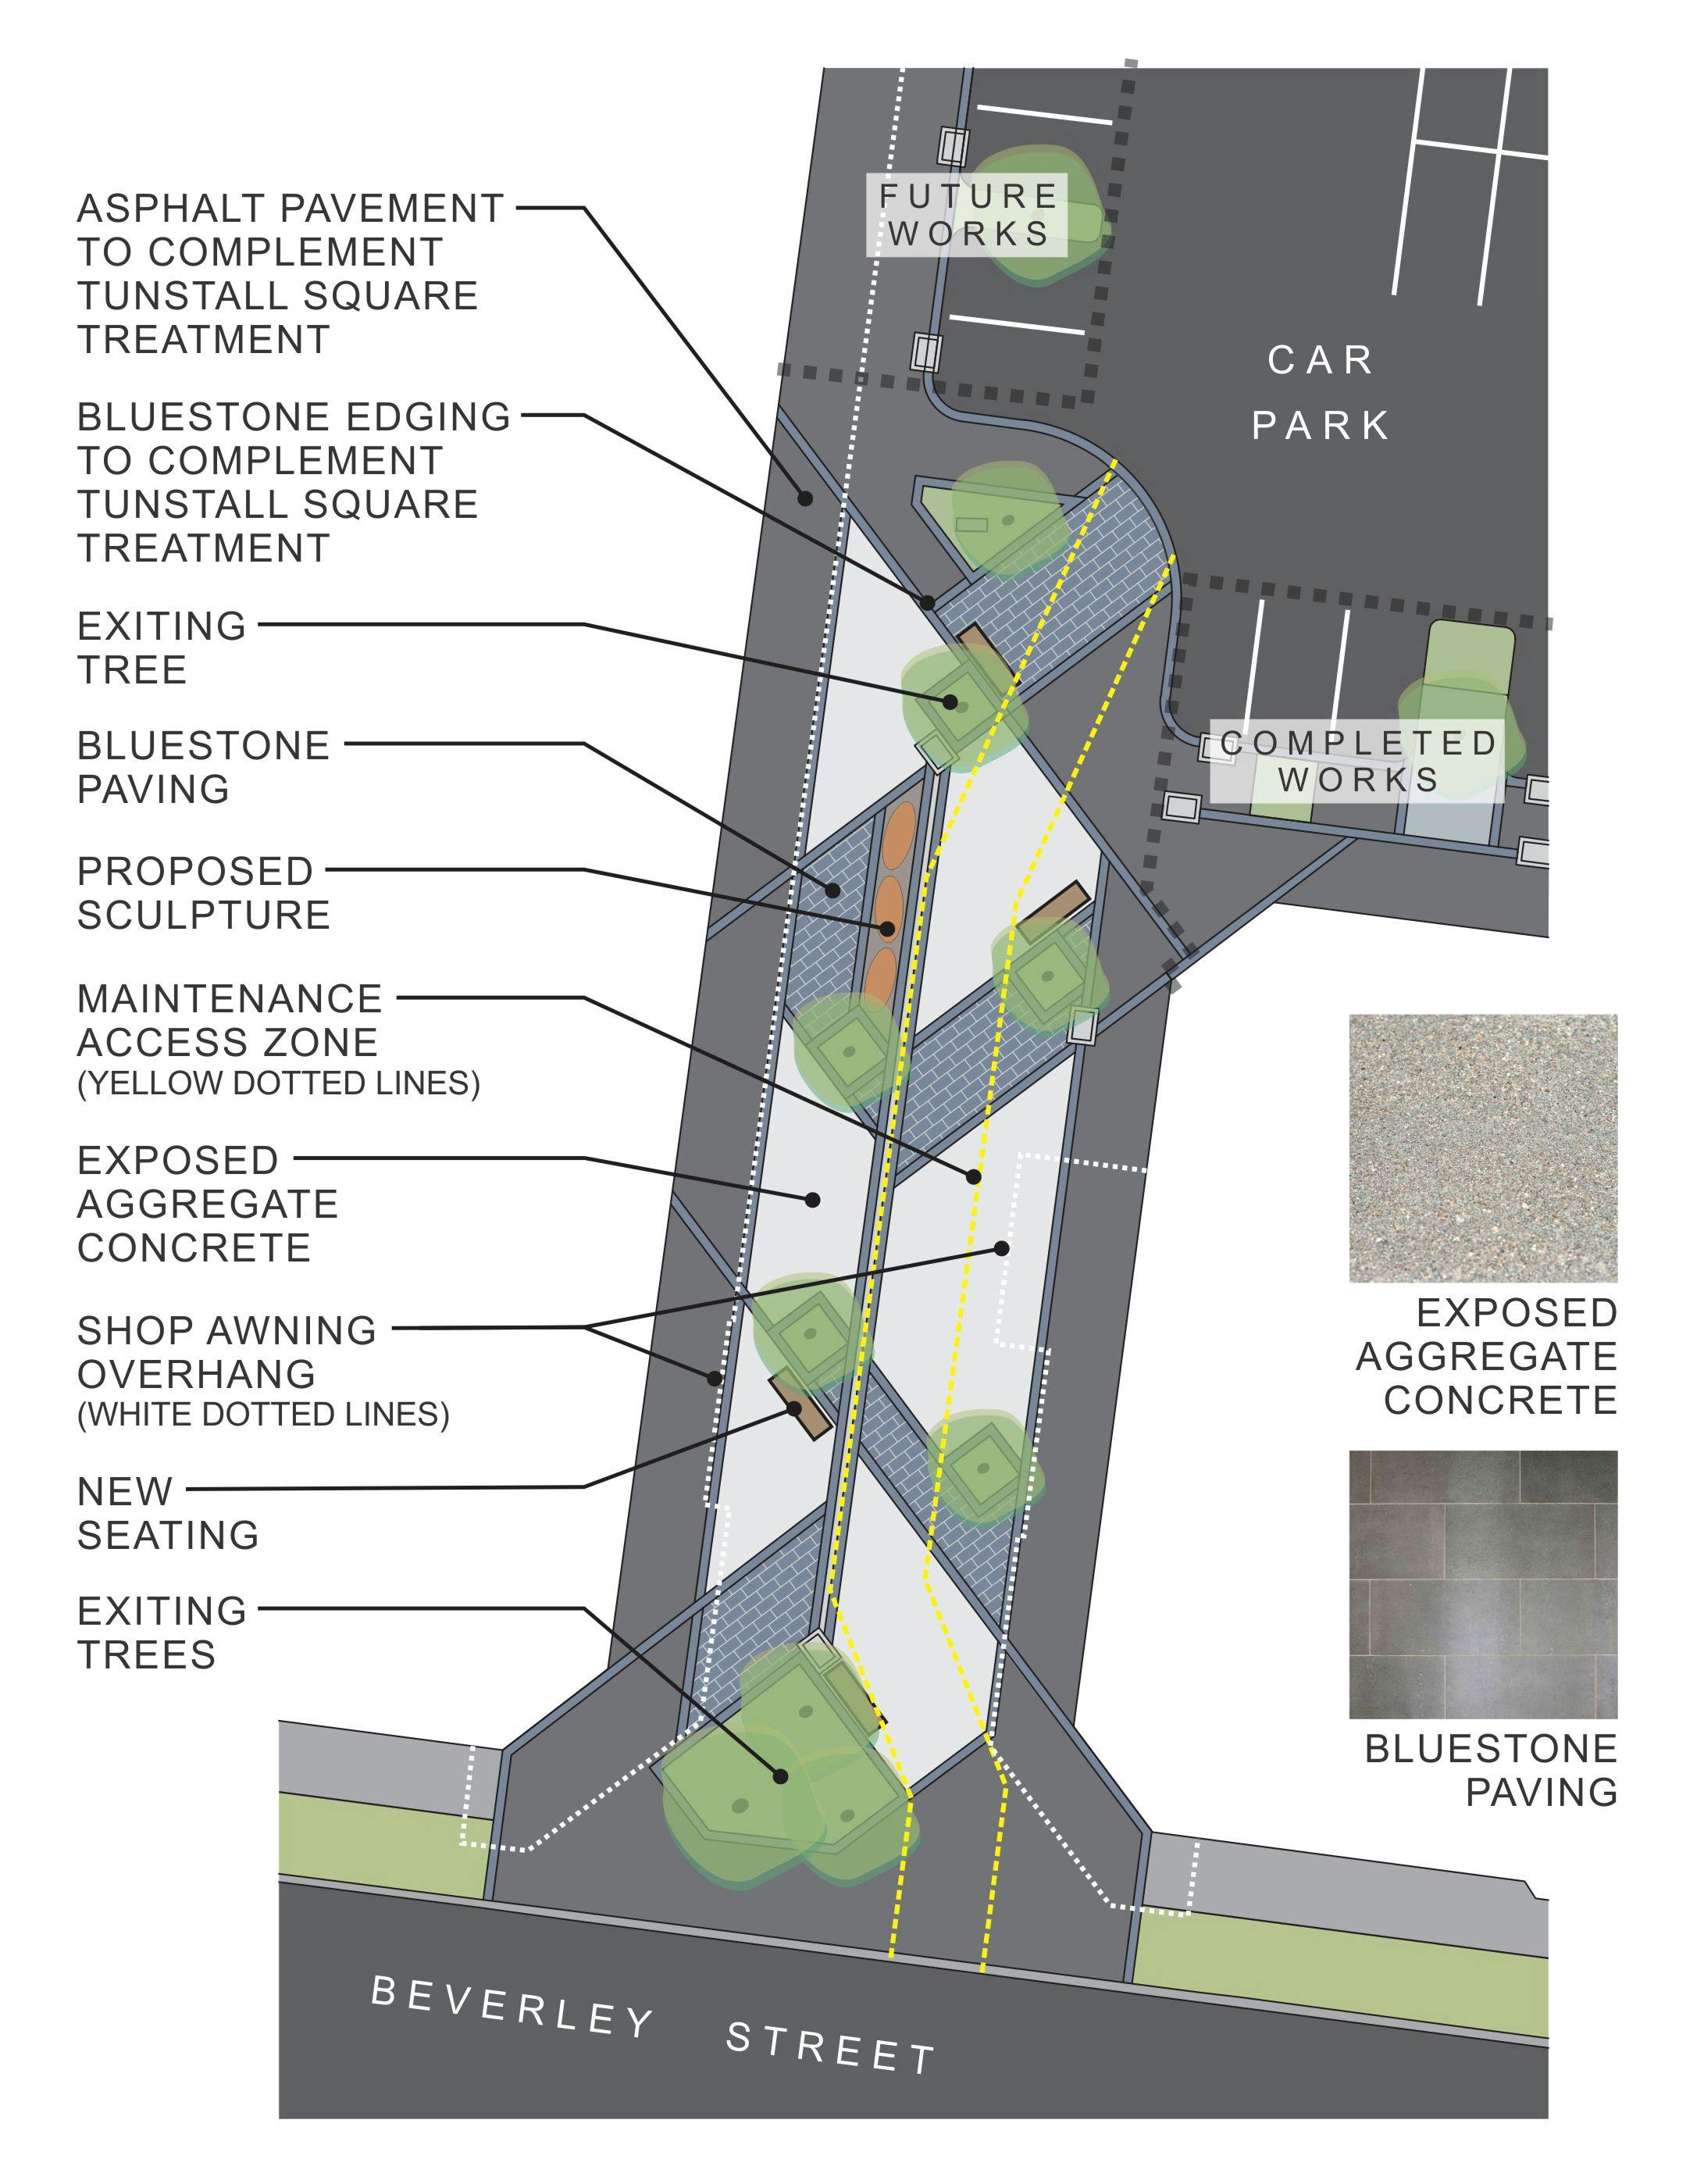 Tunstall Square Public Plaza Concept Plan